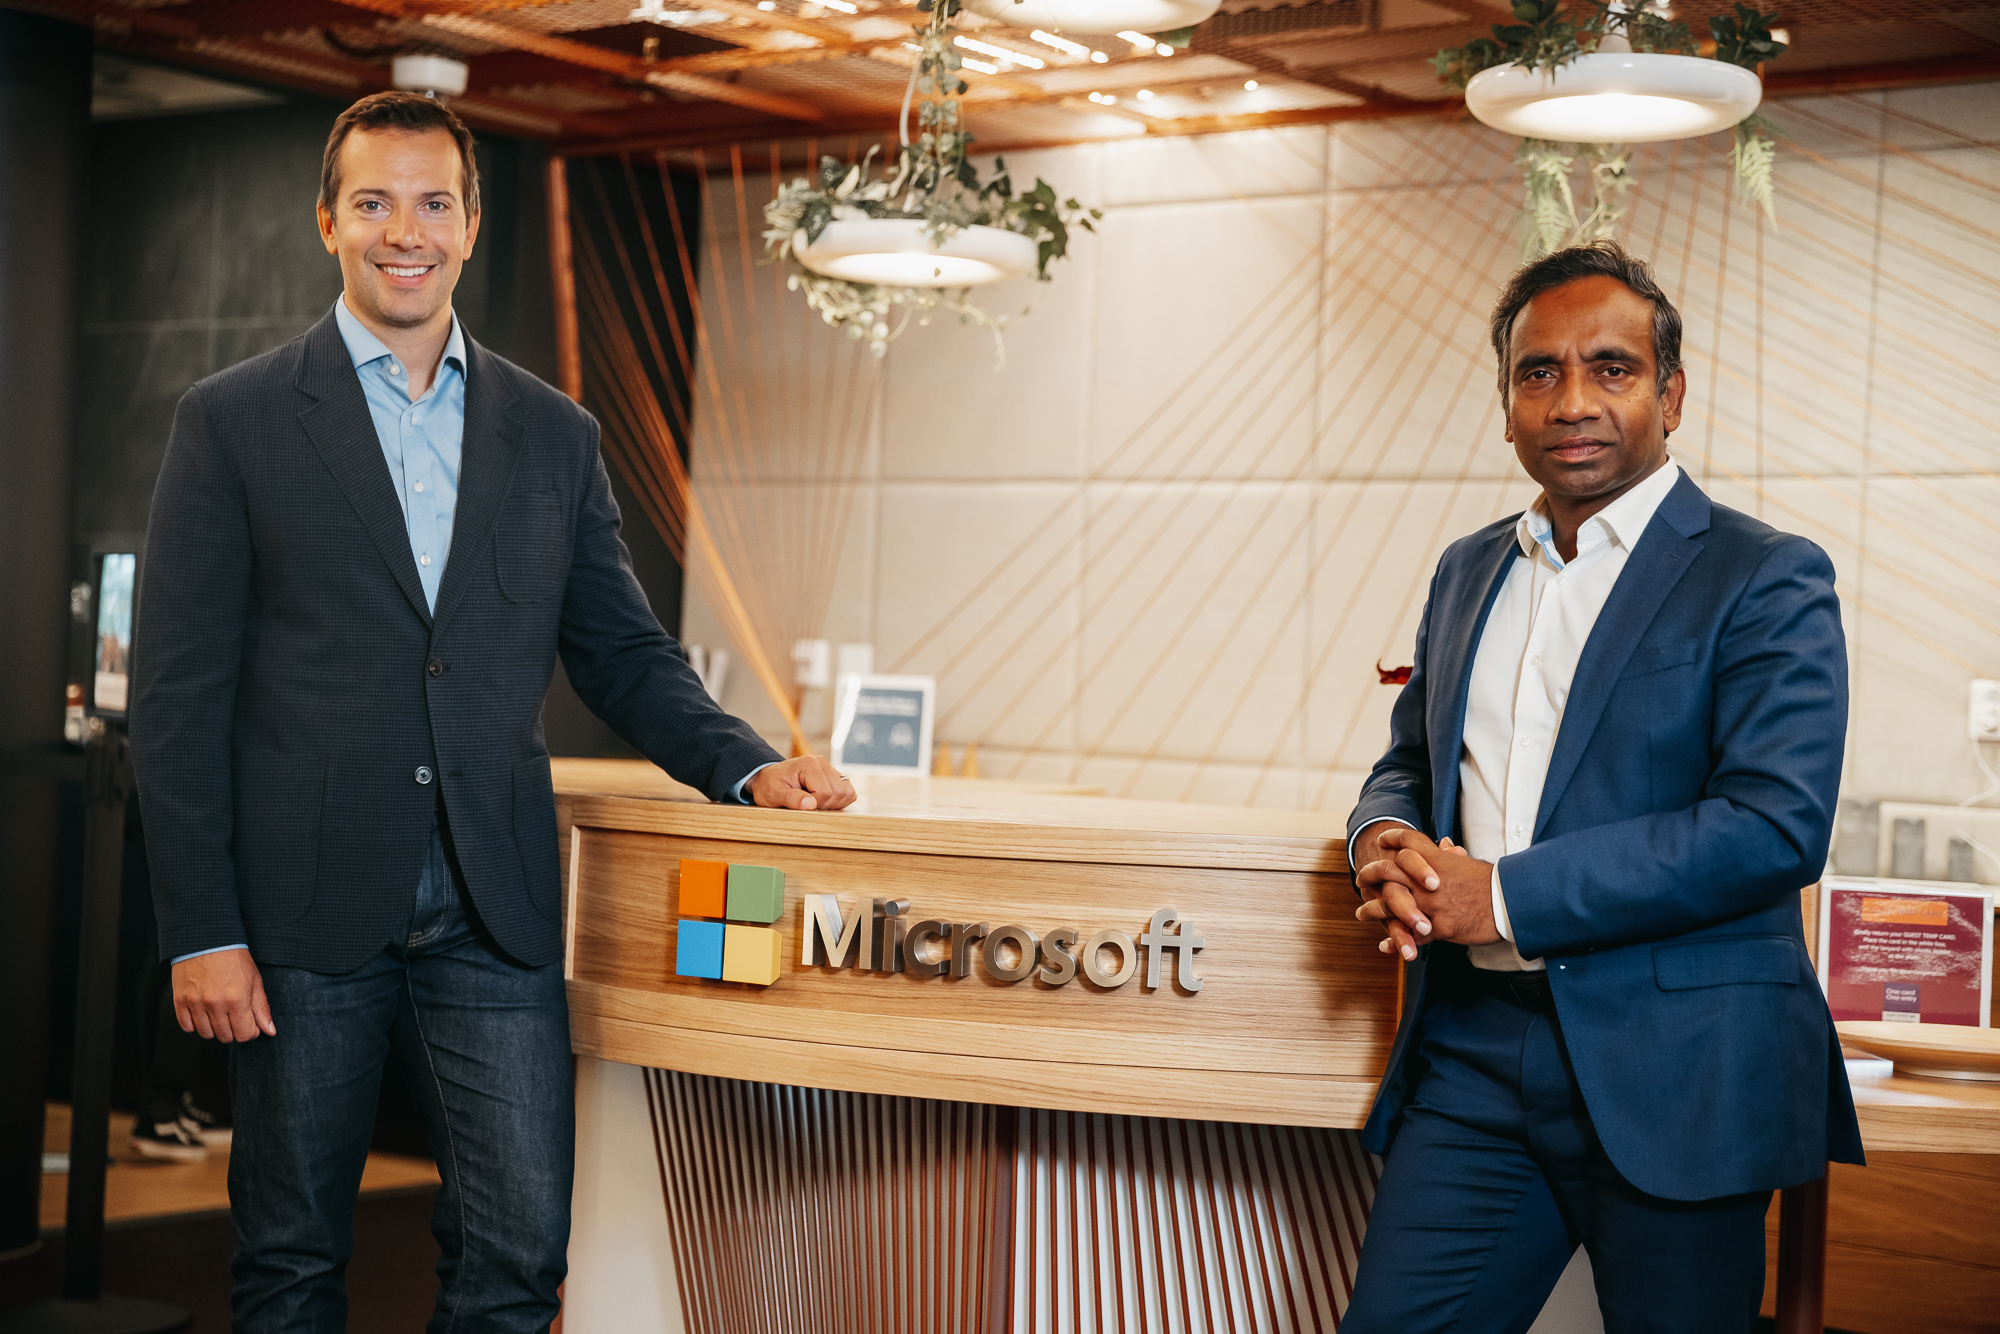 Nadarajah og Reime smiler til kameraet foran Microsofts reception.